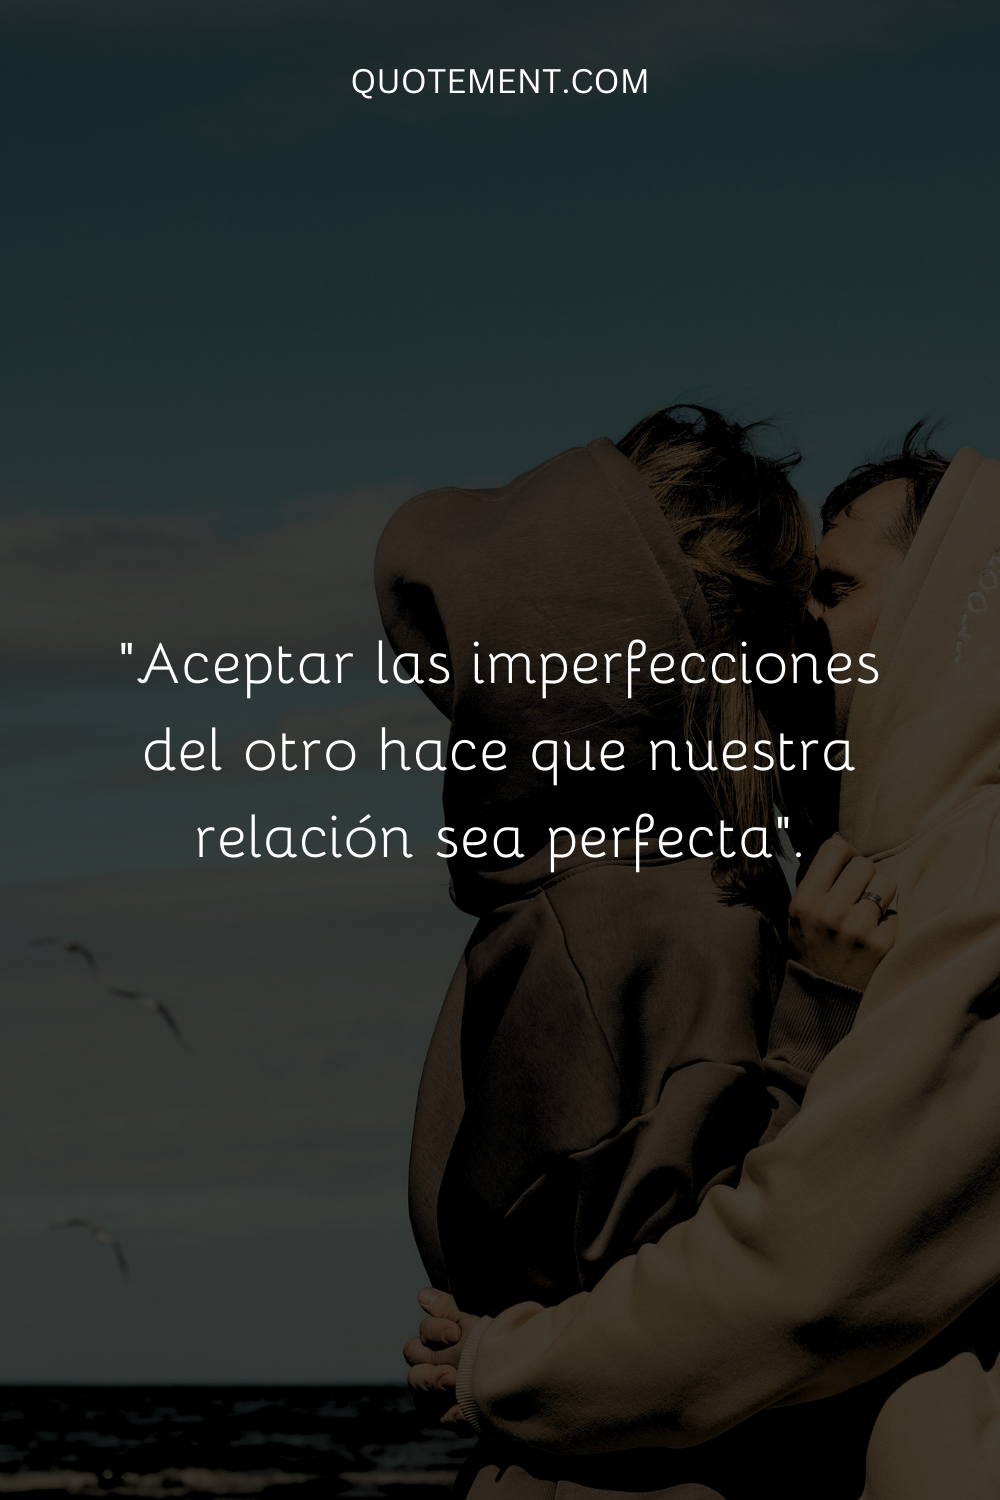 "Aceptar las imperfecciones del otro hace que nuestra relación sea perfecta".